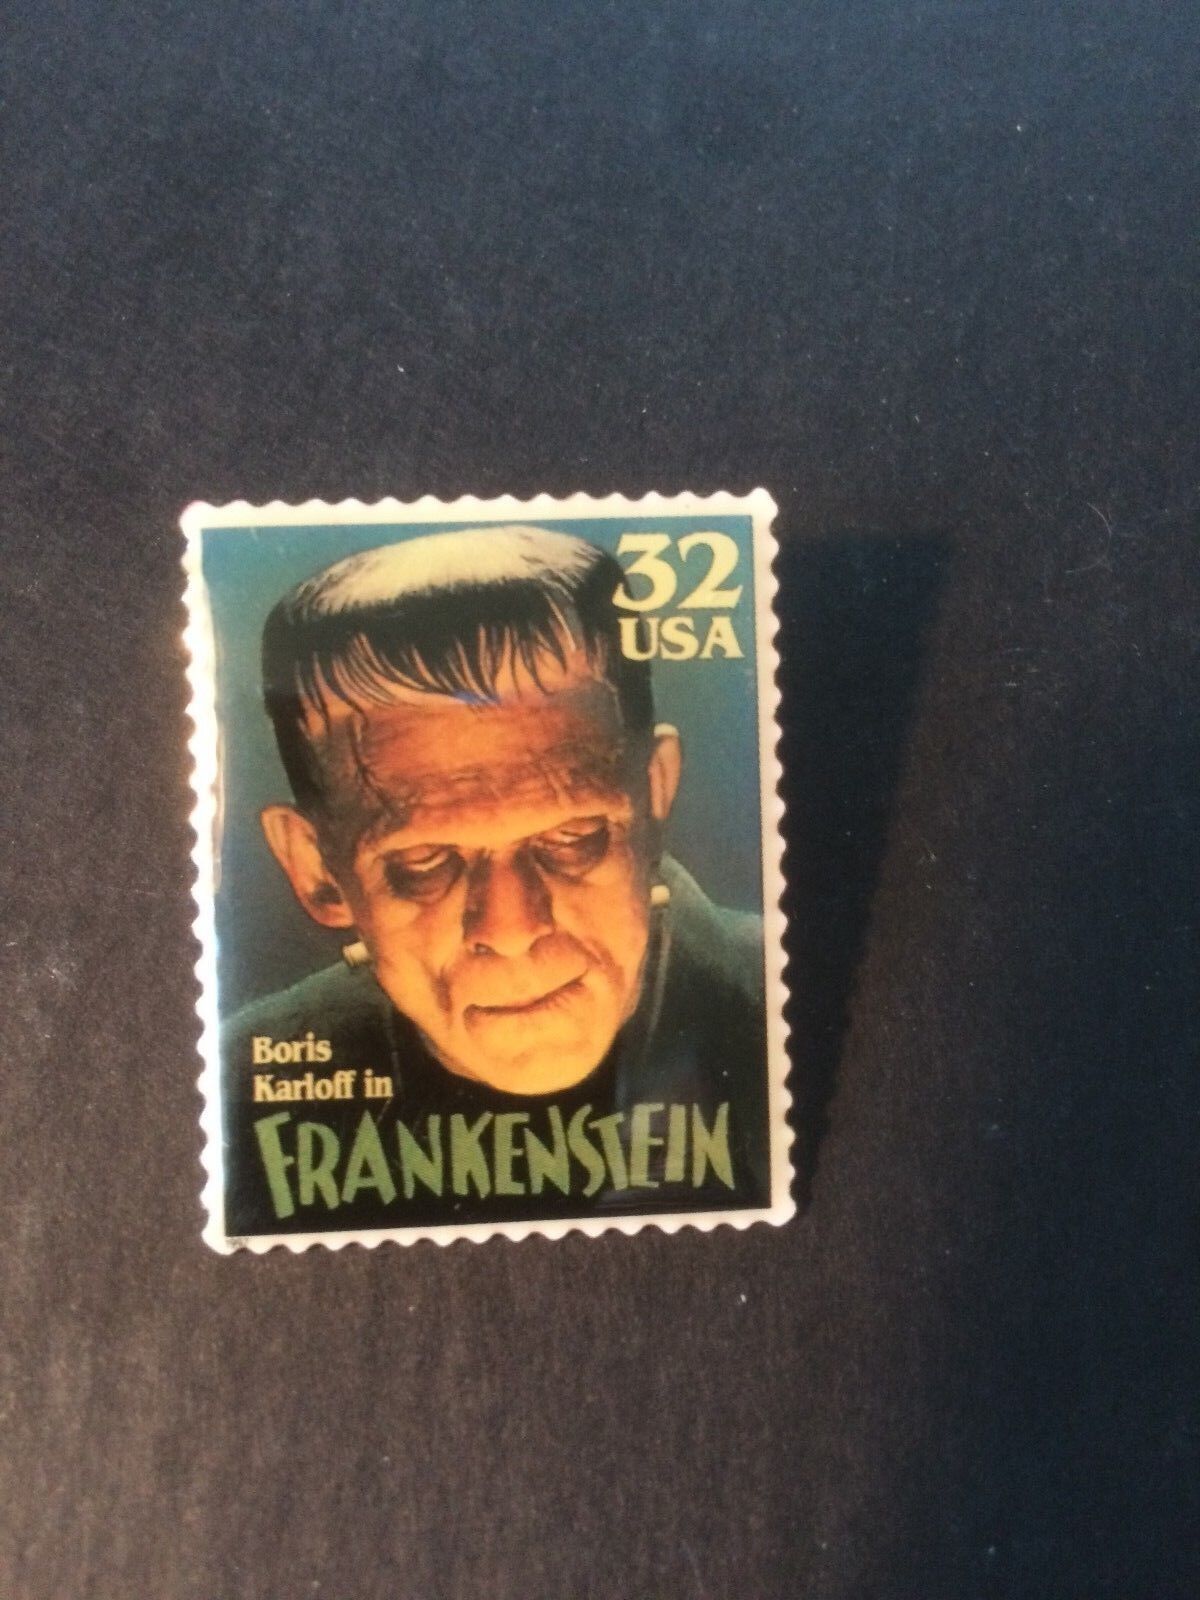 Frankenstein Boris Karloff Vintage Stamp Pin - New In Package - Usps